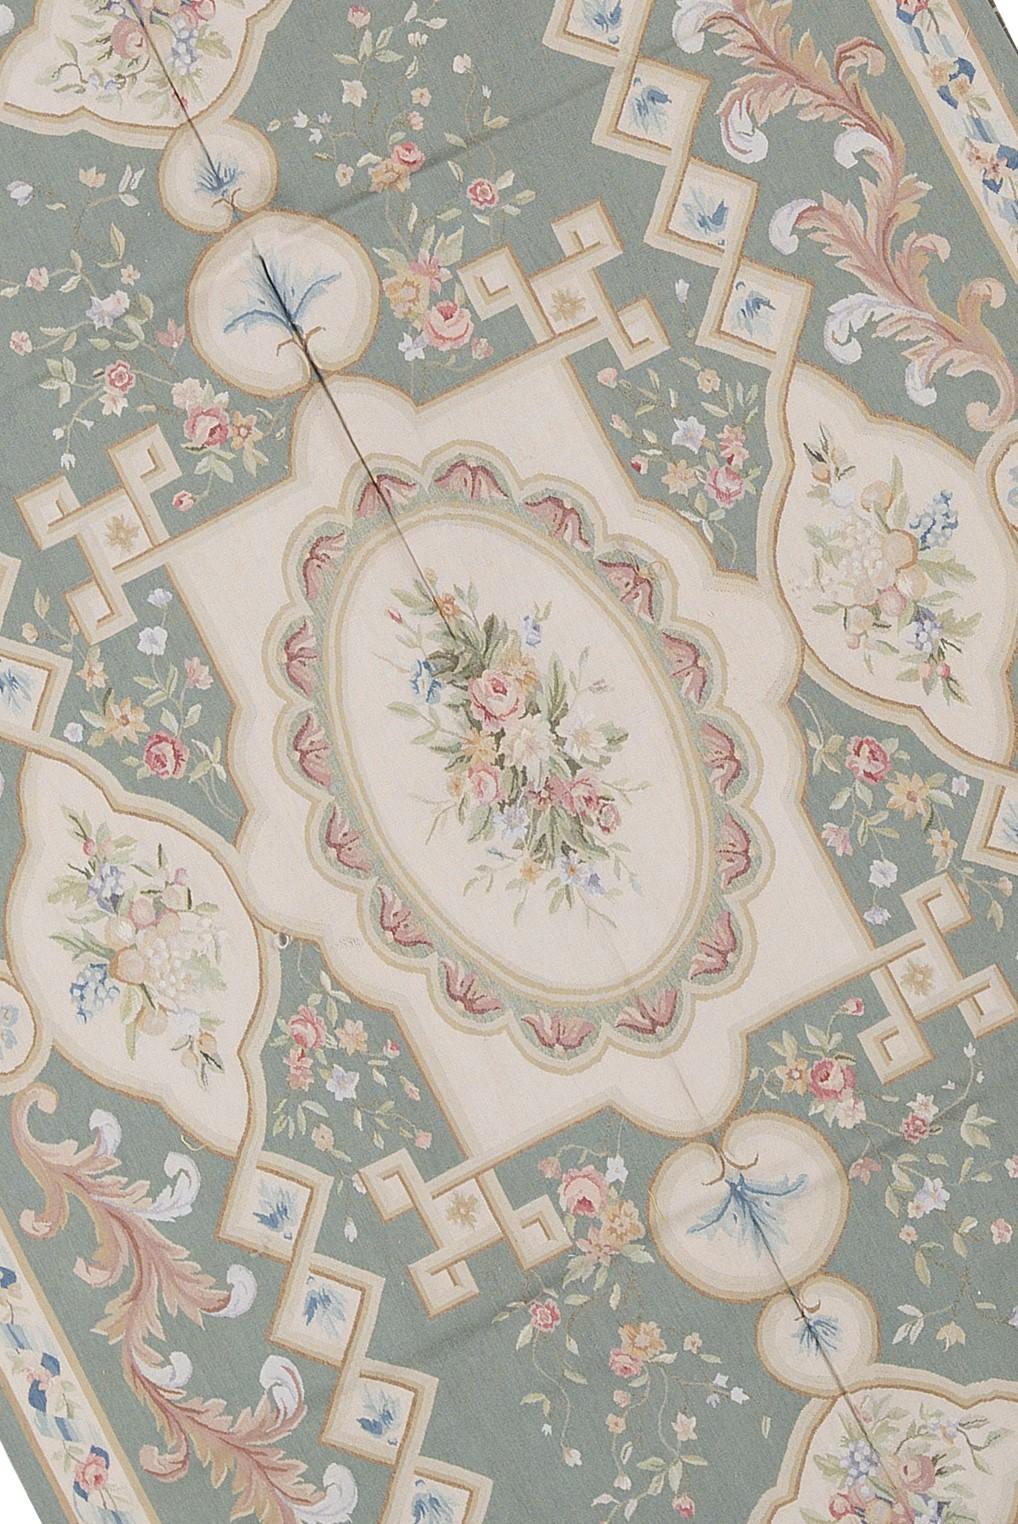 Recréation tissée à la main des tapis français classiques à tissage plat d'Aubusson, que l'on trouve dans les plus belles demeures et les plus beaux palais depuis la fin du XVIIe siècle. Taille : 5' 11'' x 9' 2''.